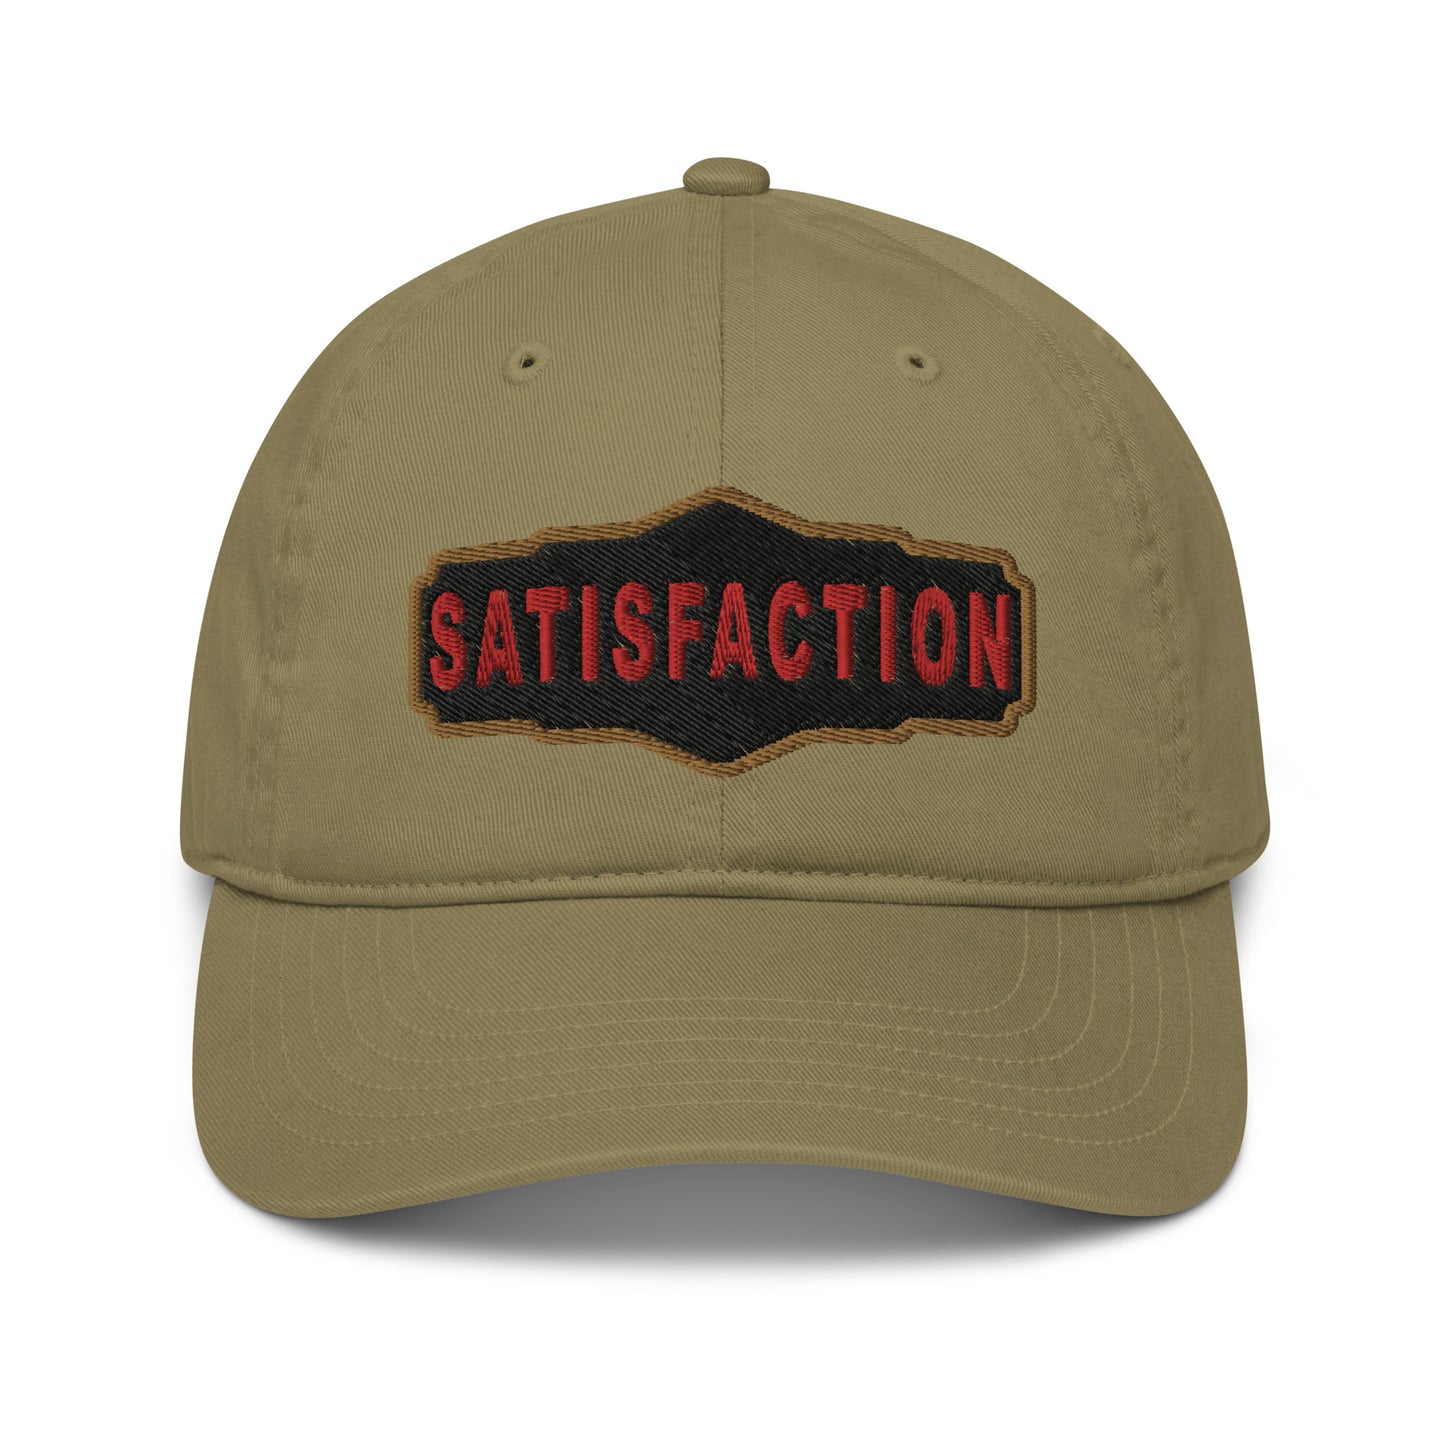 SATISFACTION CLASSIC CAP